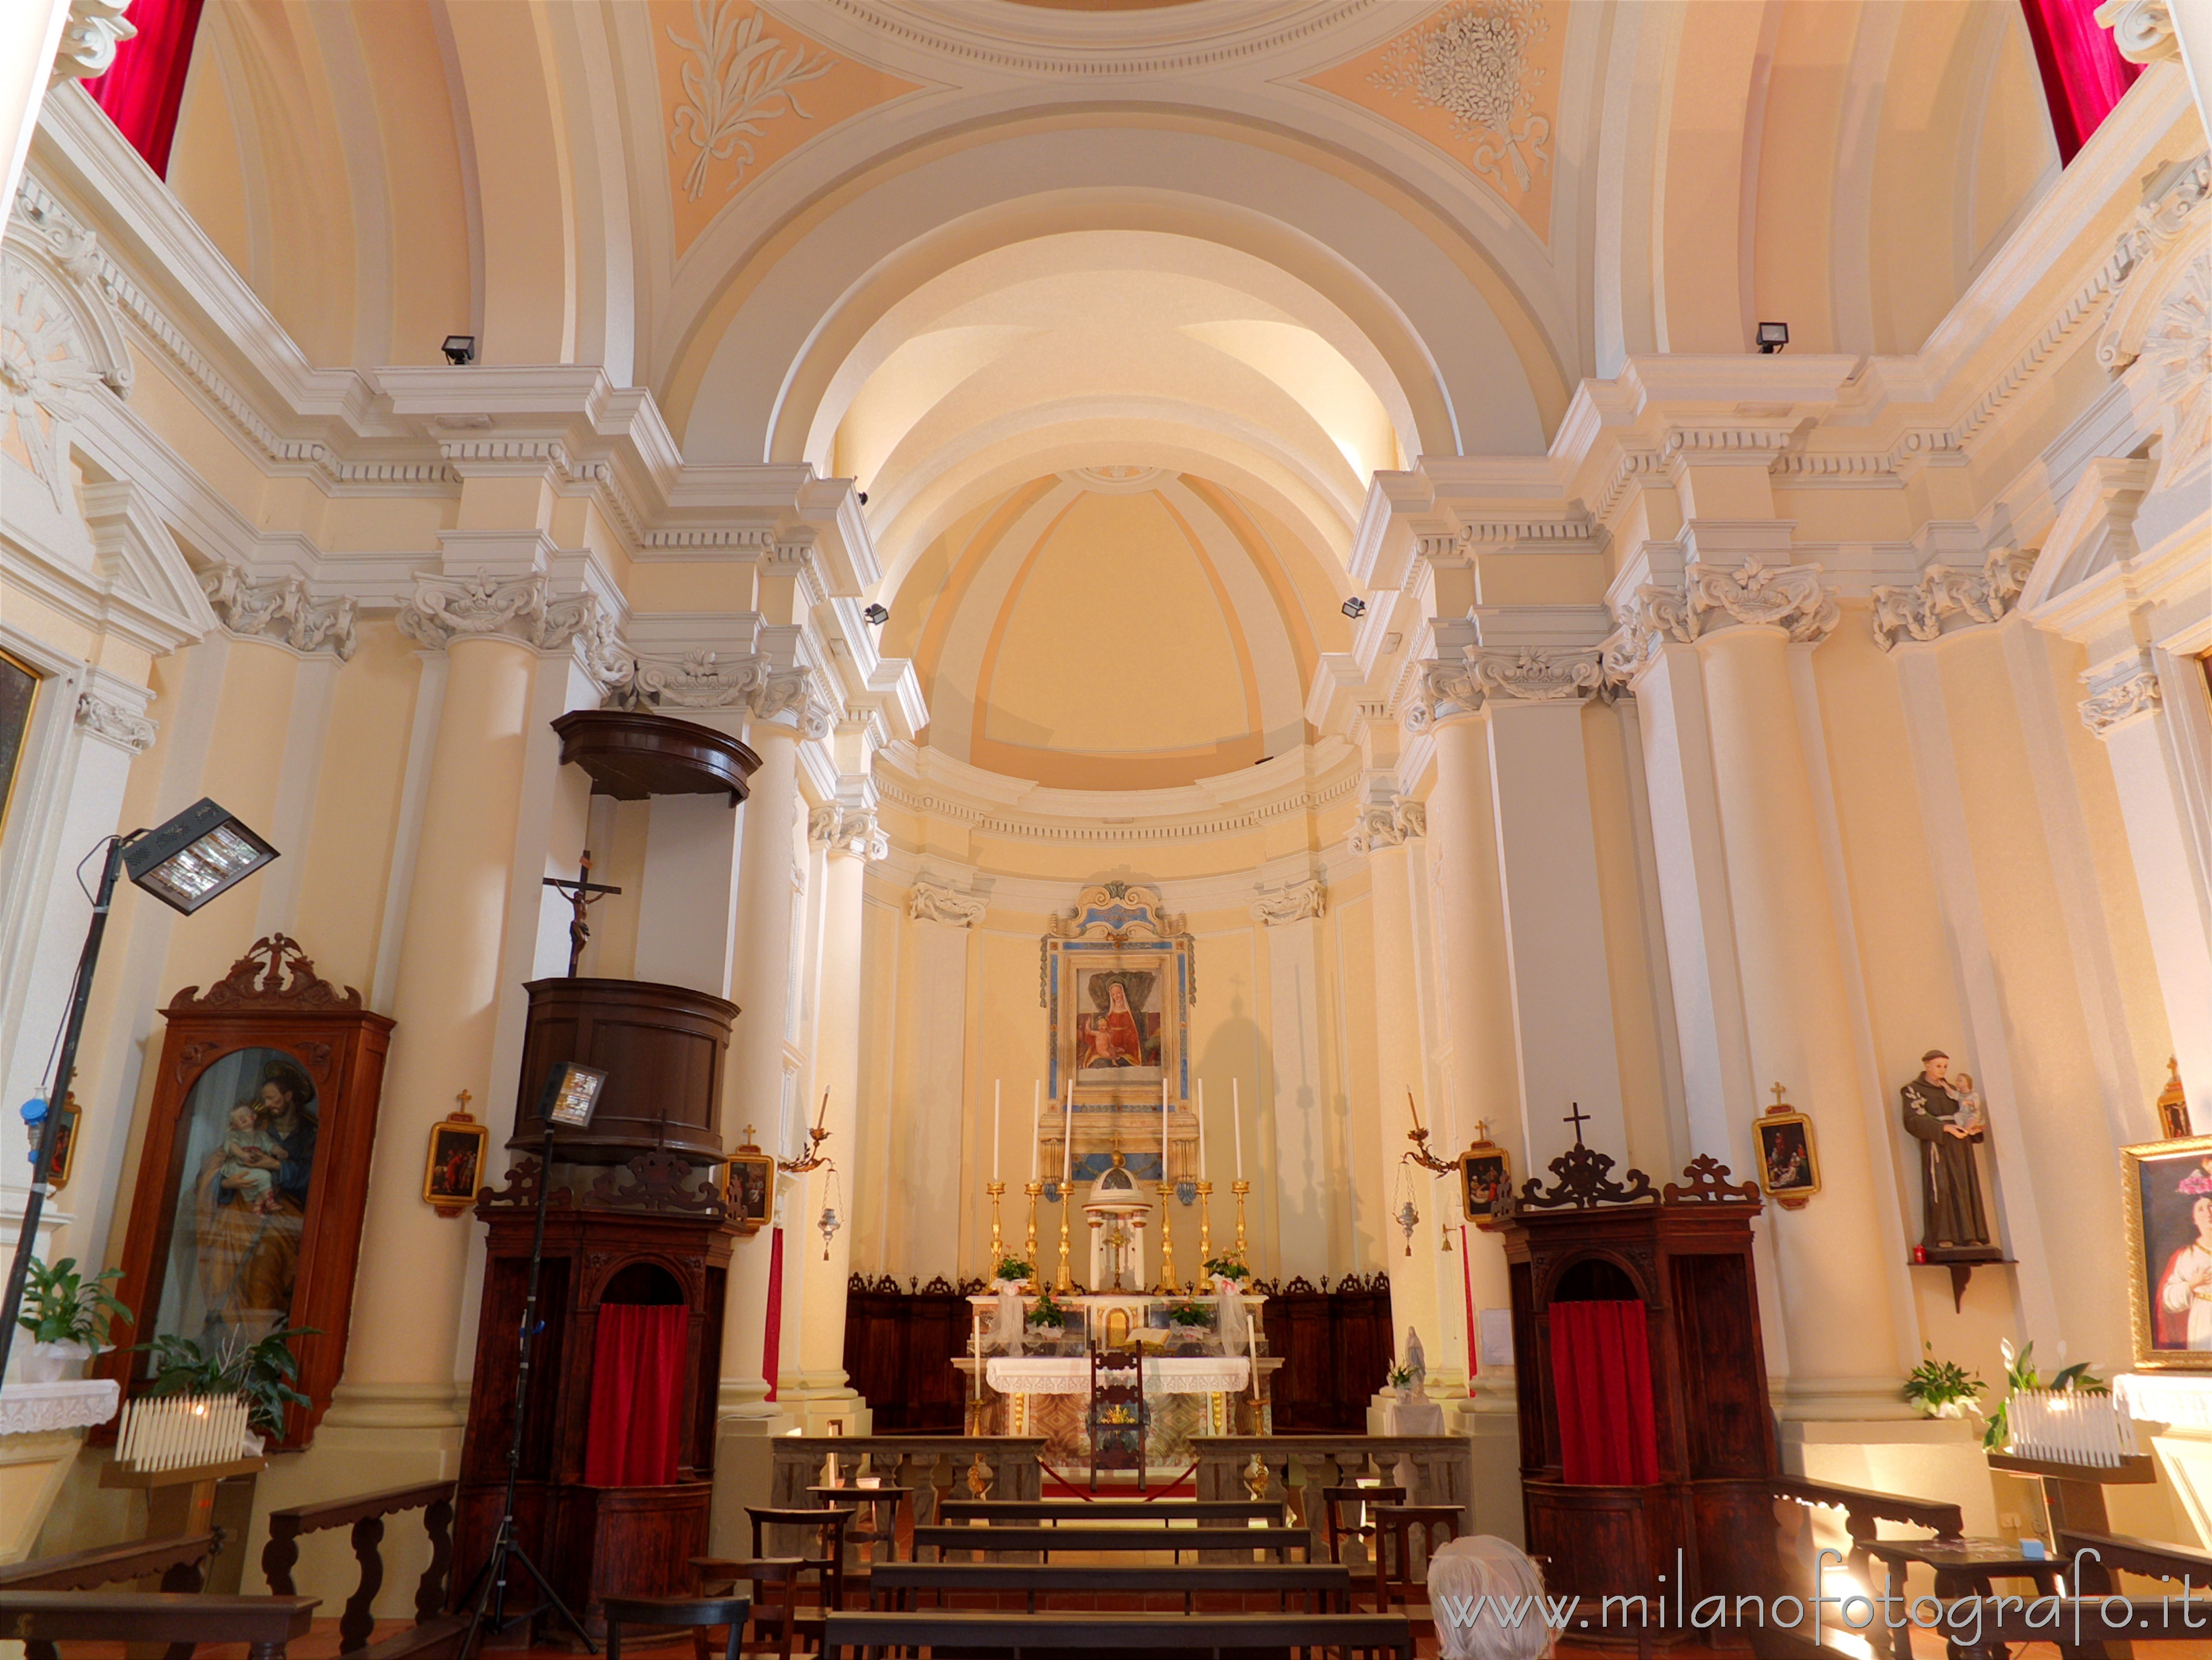 San Giovanni in Marignano (Rimini, Italy): Interior of the Church of Santa Lucia - San Giovanni in Marignano (Rimini, Italy)